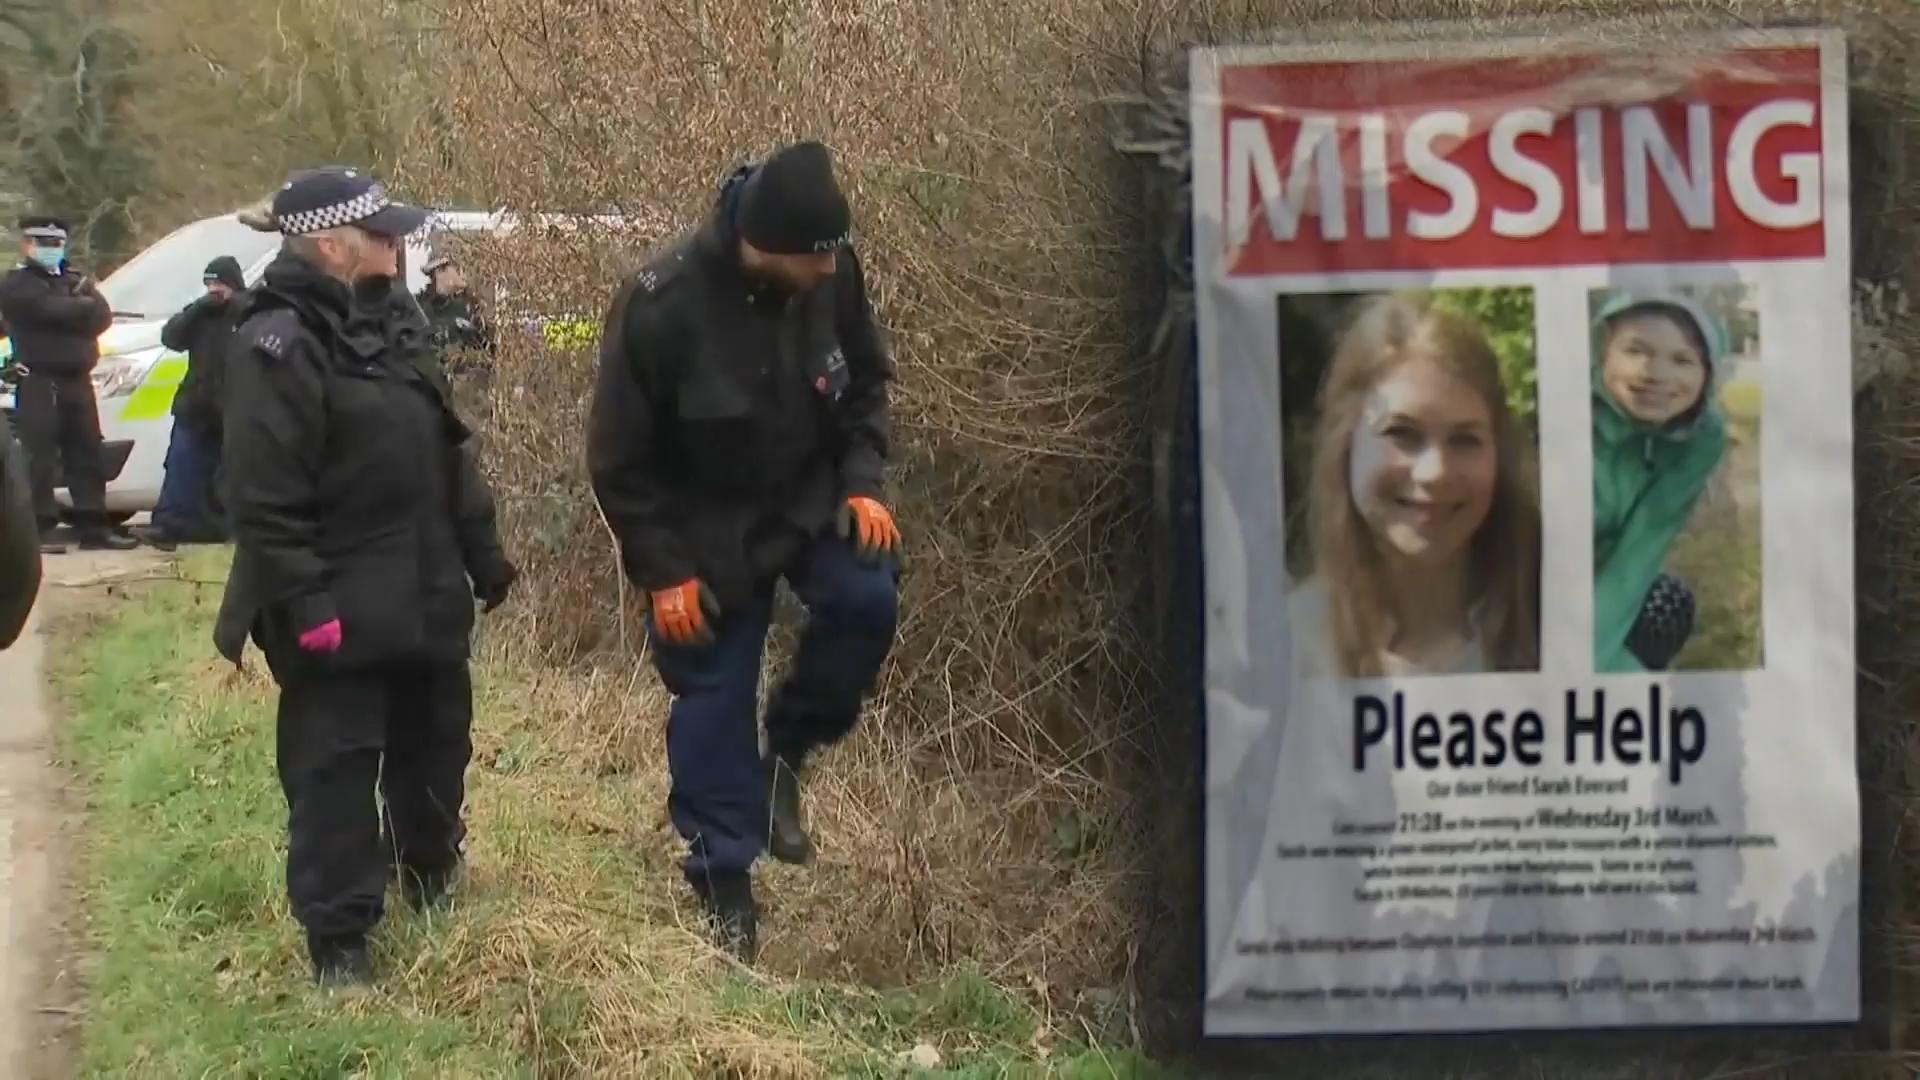 Sarah Everard verschwunden: Polizei sucht Vermisste Kent: Polizist unter Mordverdacht